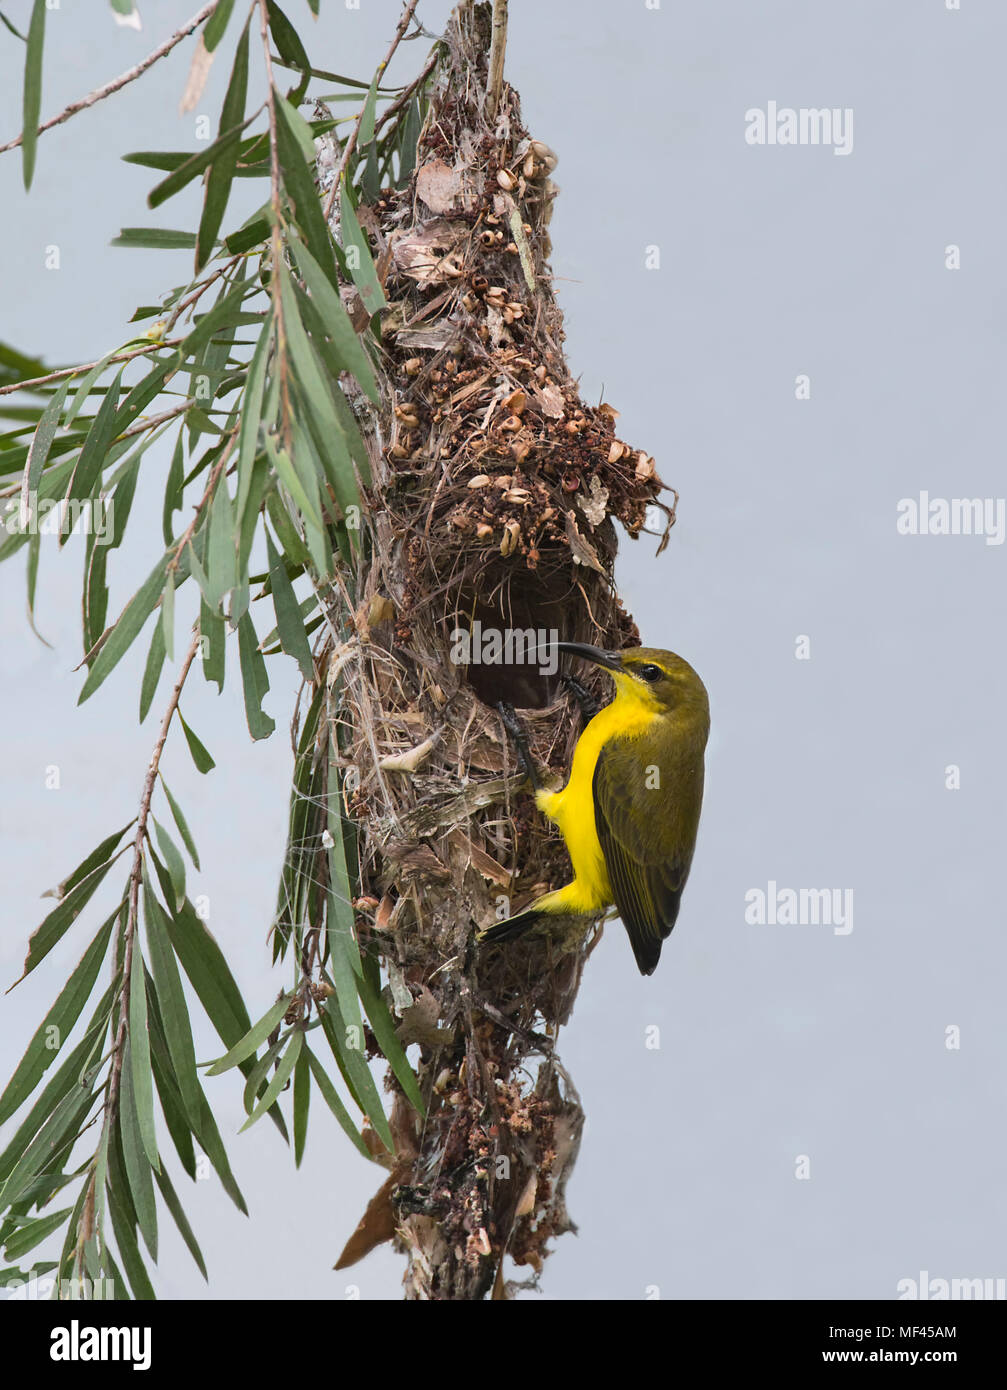 Weibliche Yellow-bellied Sunbird oder Olive-backed Sunbird (Nectarinia jugularis) an ihrem Nest hängend, Far North Queensland, FNQ, QLD, Australien Stockfoto